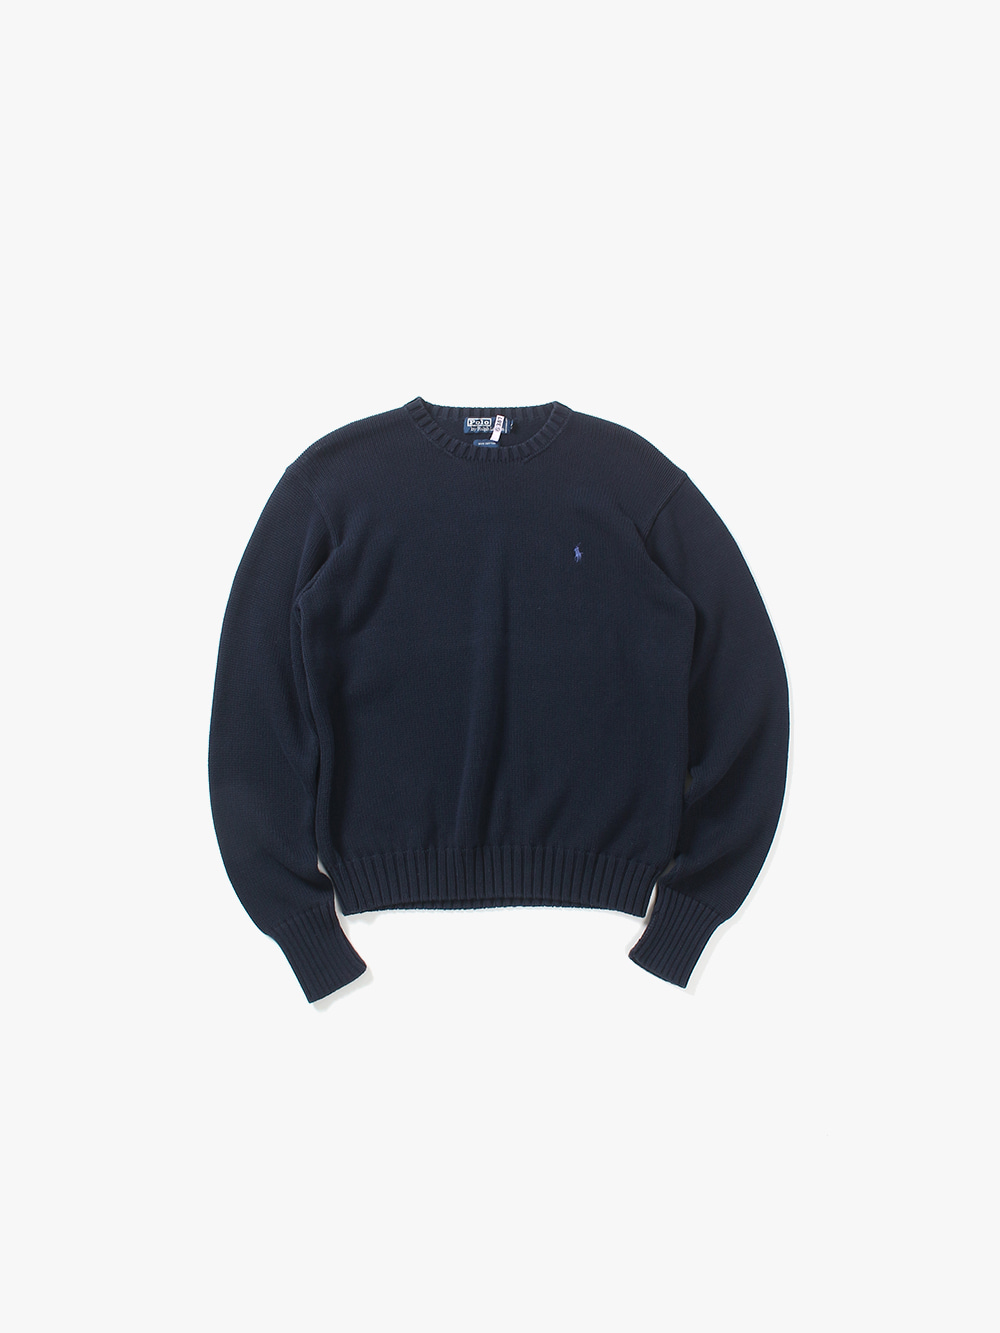 [ M ] Polo Ralph Lauren Sweater (6261)